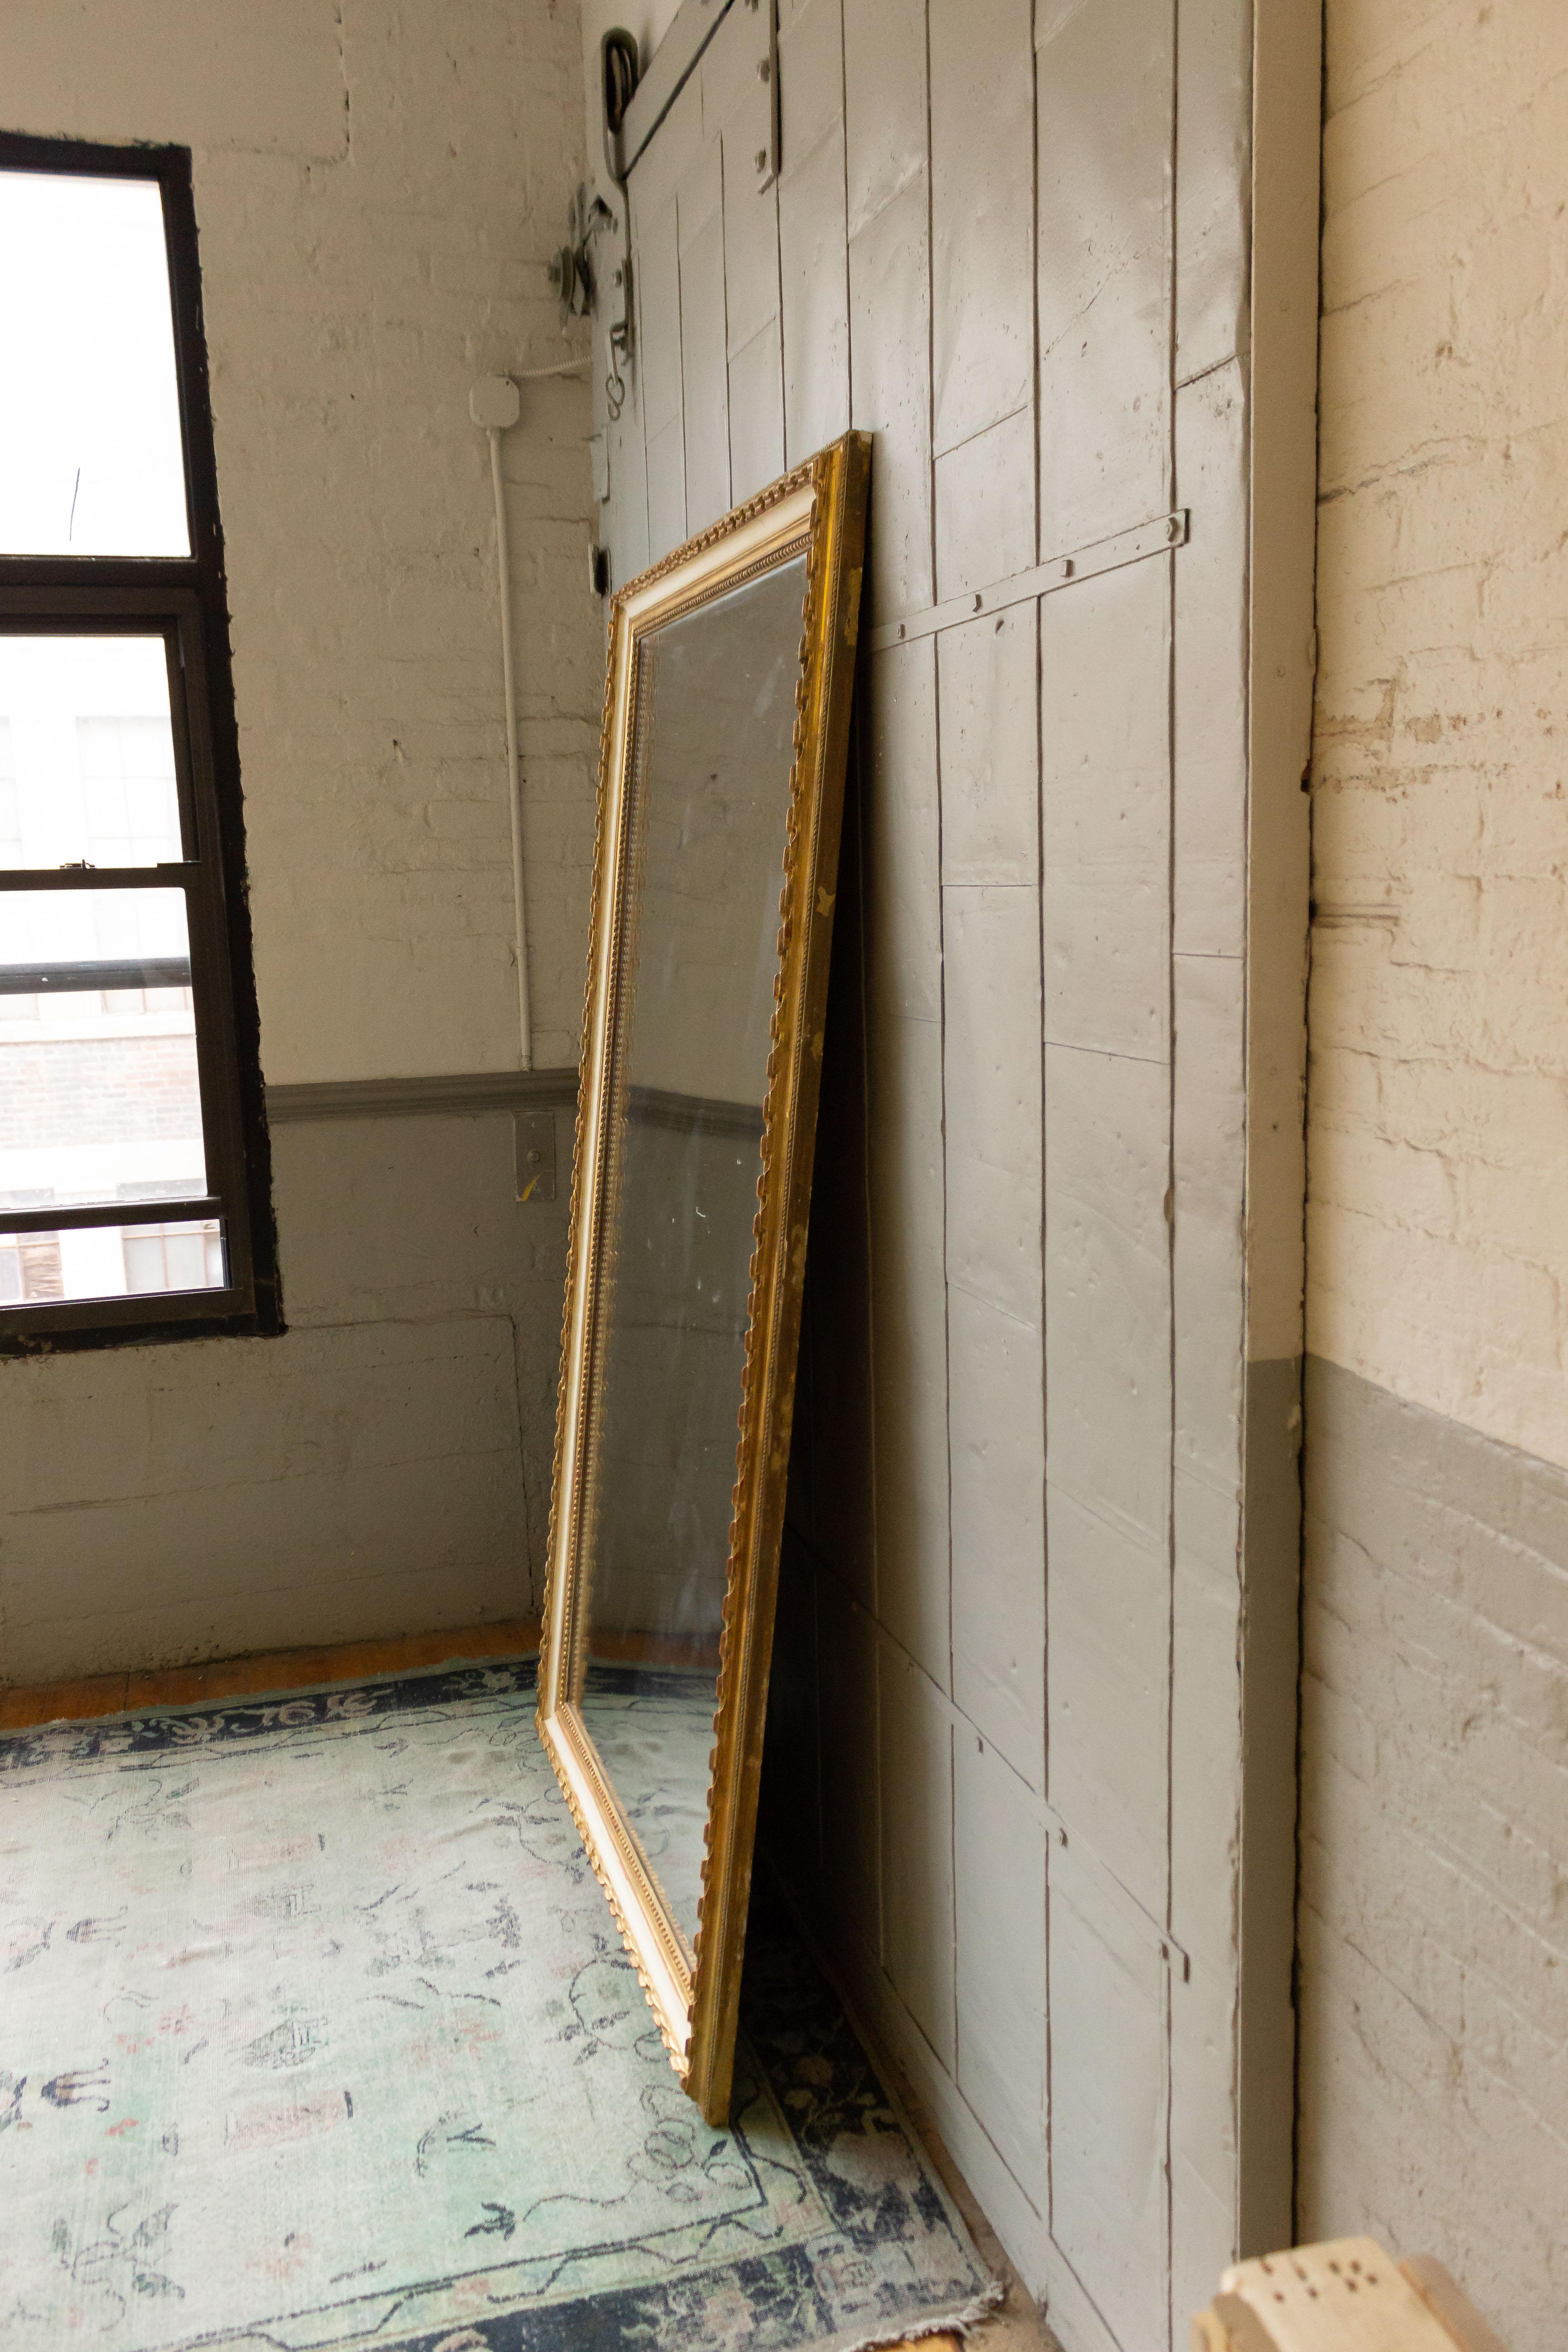 Grand miroir au mercure français du 19ème siècle dans un cadre en bois doré sculpté avec un contraste peint en blanc cassé. Le verre au mercure et le support en bois sont d'origine. Un système de suspension à taquets a été installé à l'arrière du